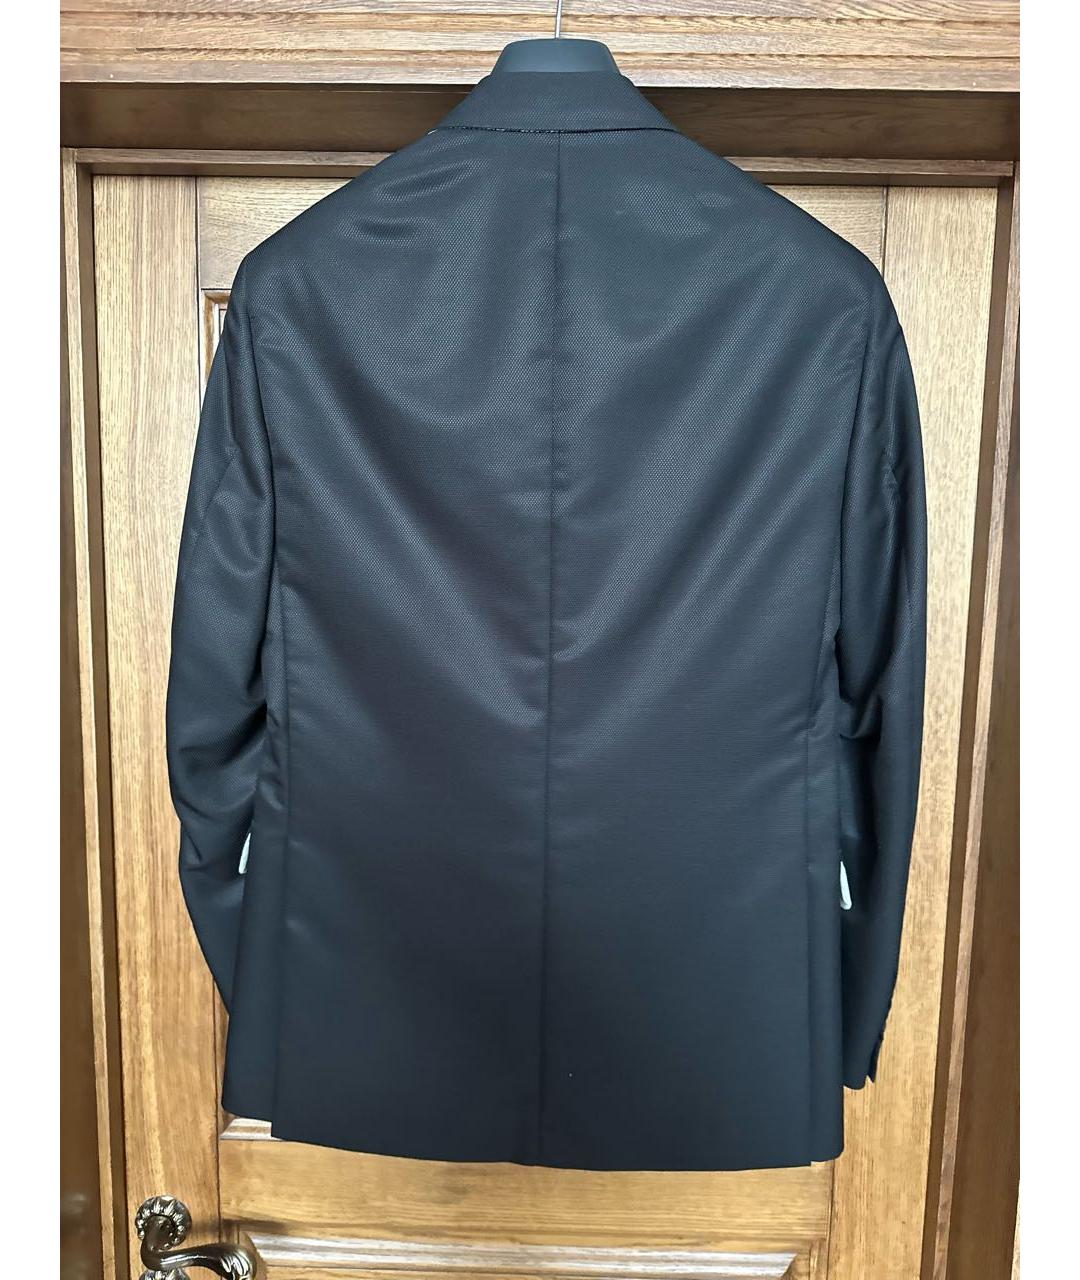 UOMO COLLEZIONI Черный шерстяной пиджак, фото 2